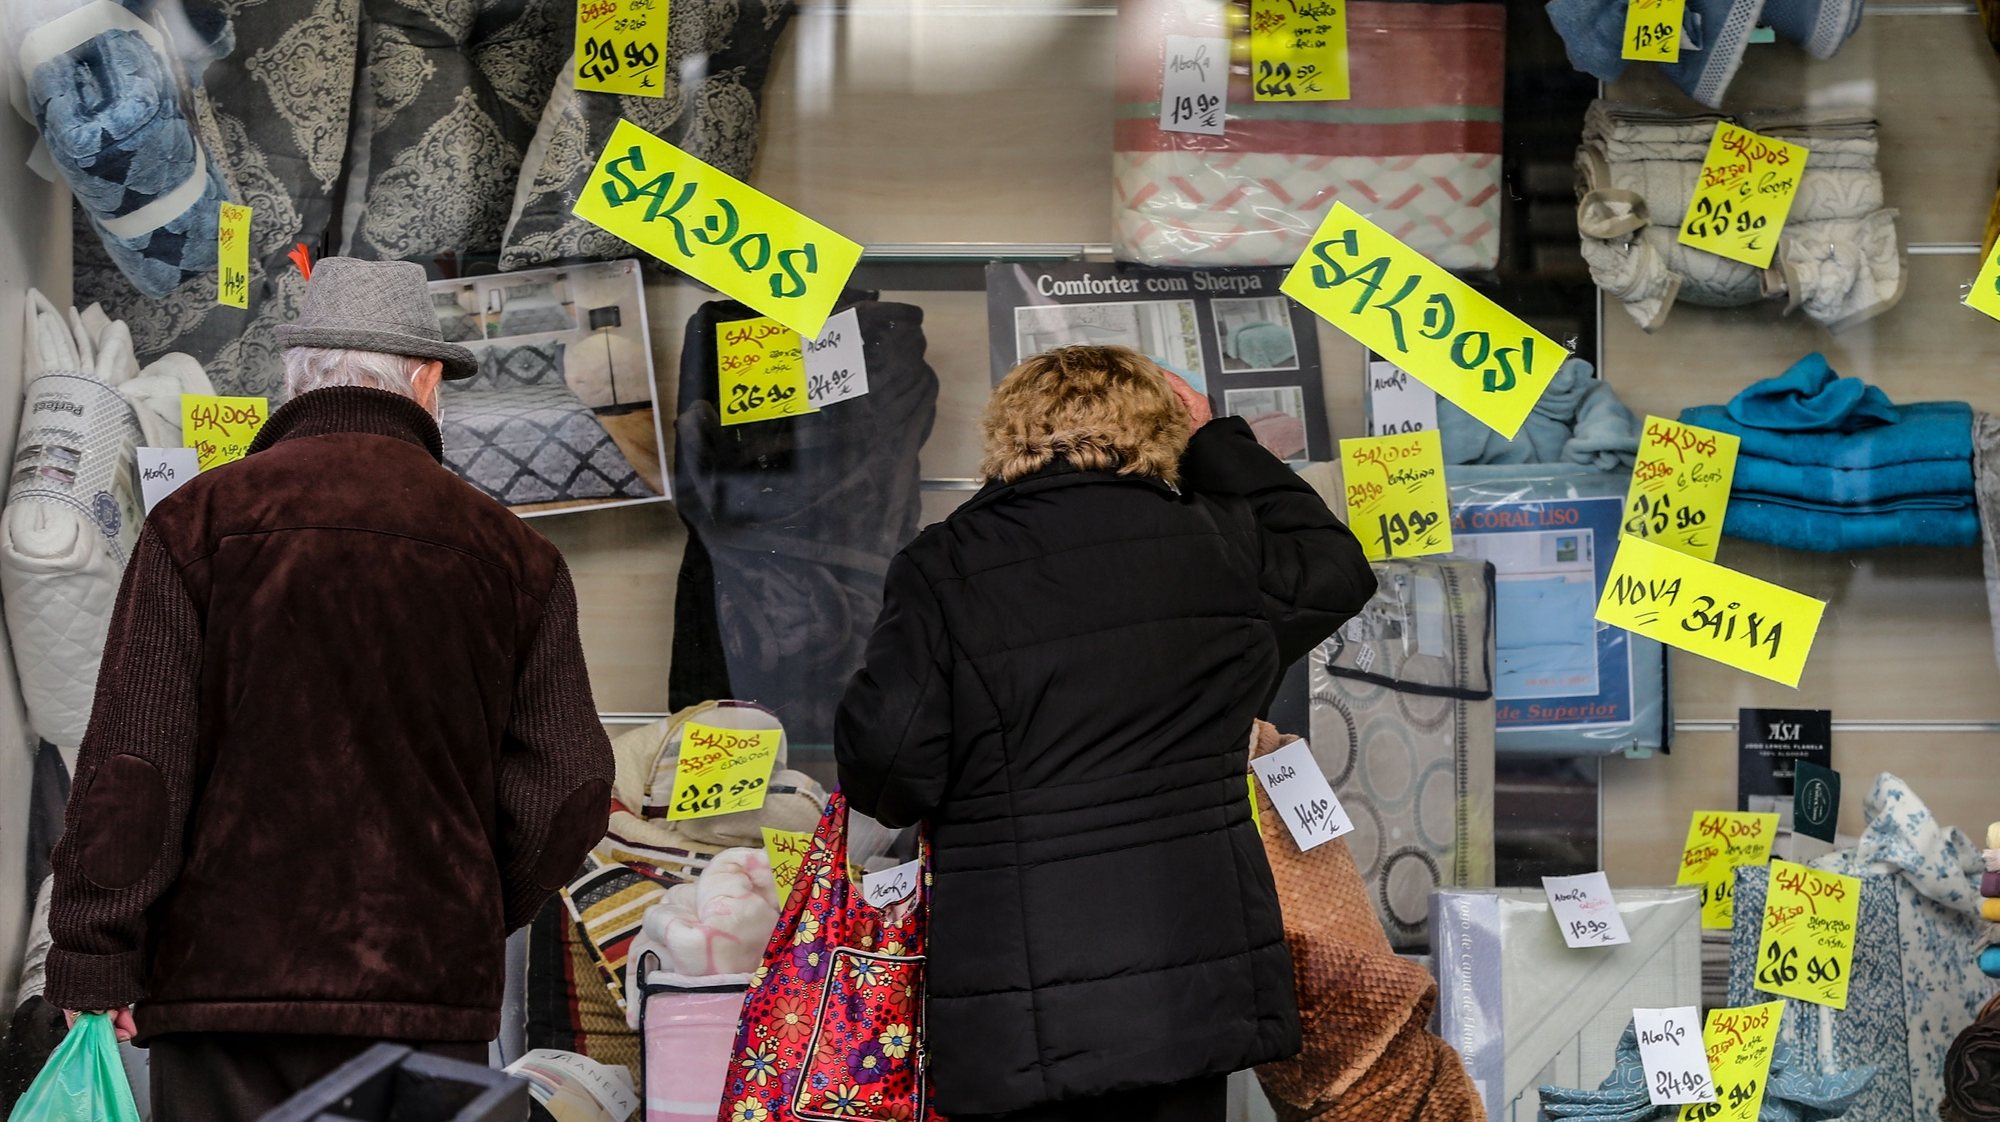 Populares observam as montras das lojas após a reabertura de comércio não-essencial e cabeleireiros fechado anteriormente após novo decreto do Estado de Emergência devido à covid-19, Lisboa, 15 março 2021.  MANUEL DE ALMEIDA / LUSA